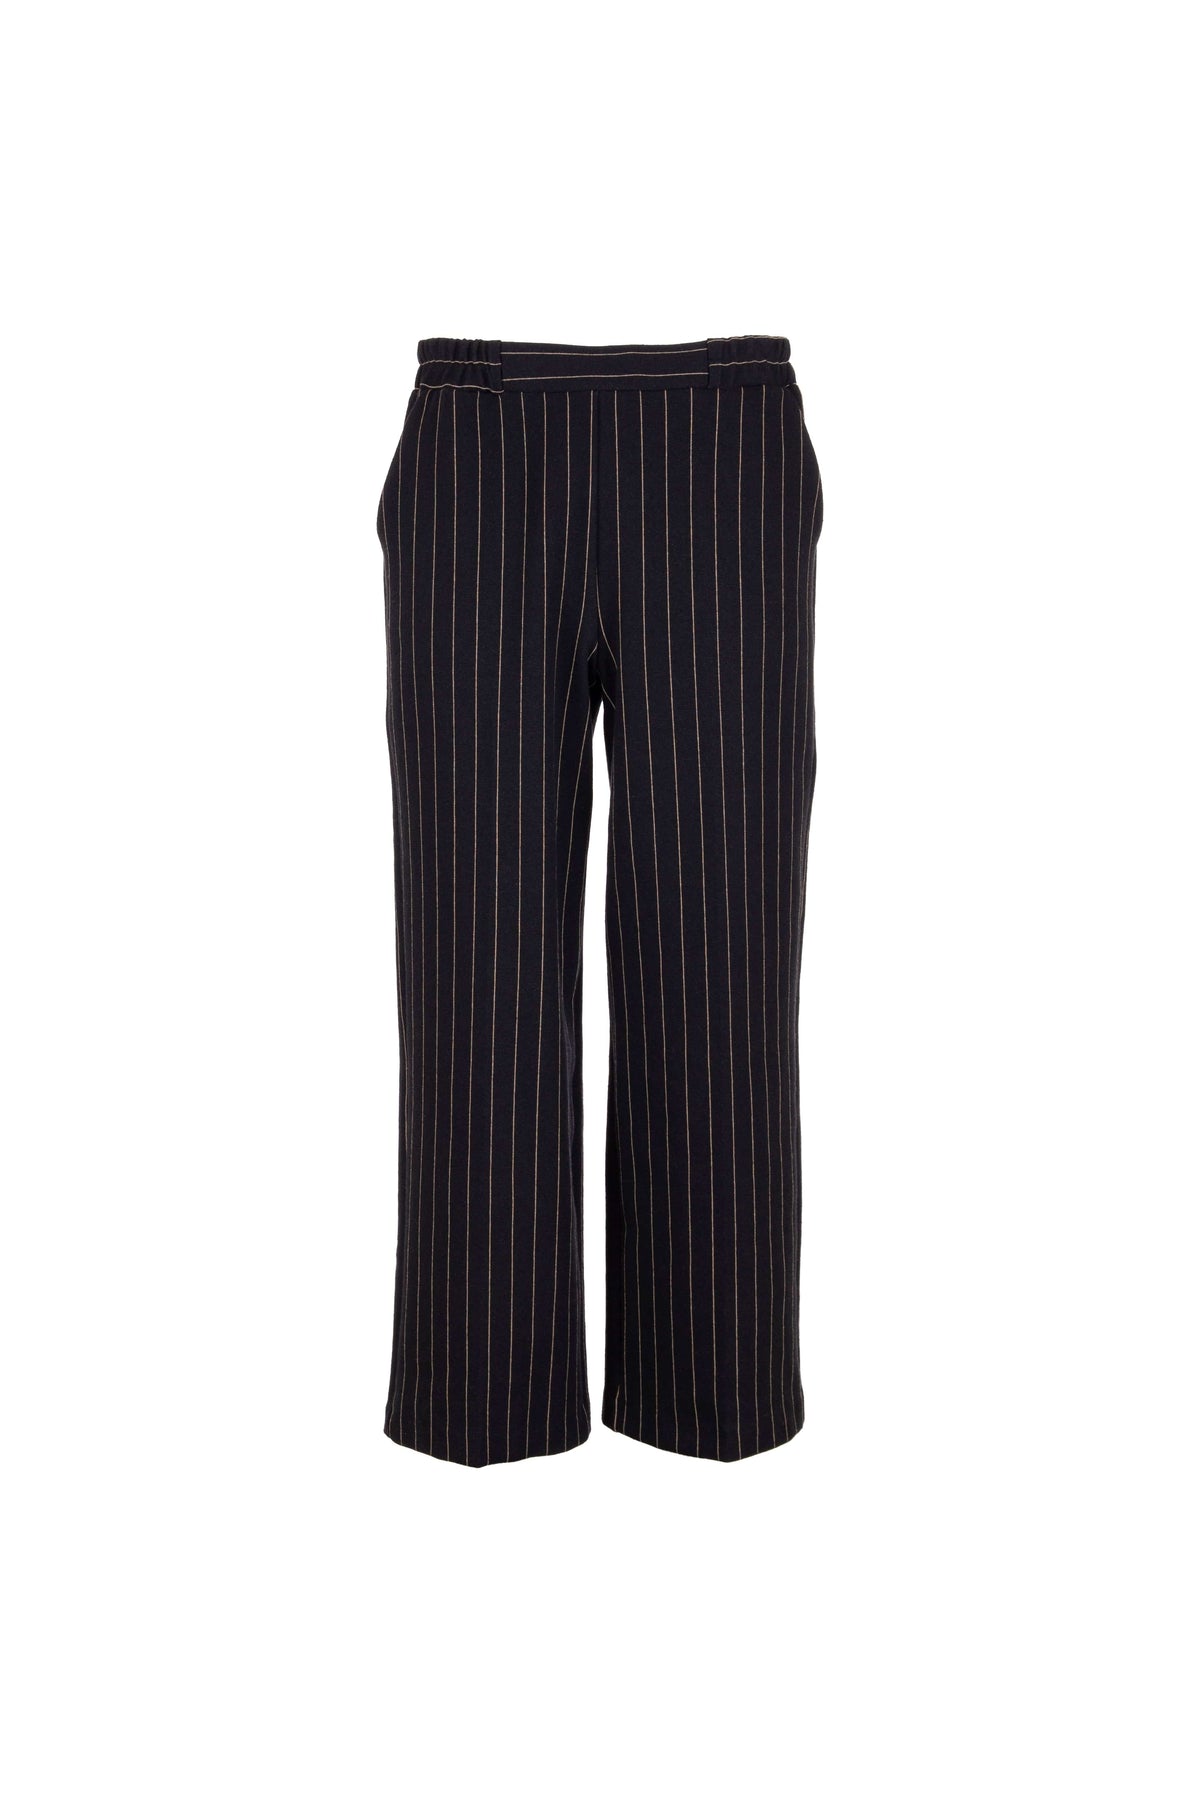 Peruzzi Crop Stripe Trouser